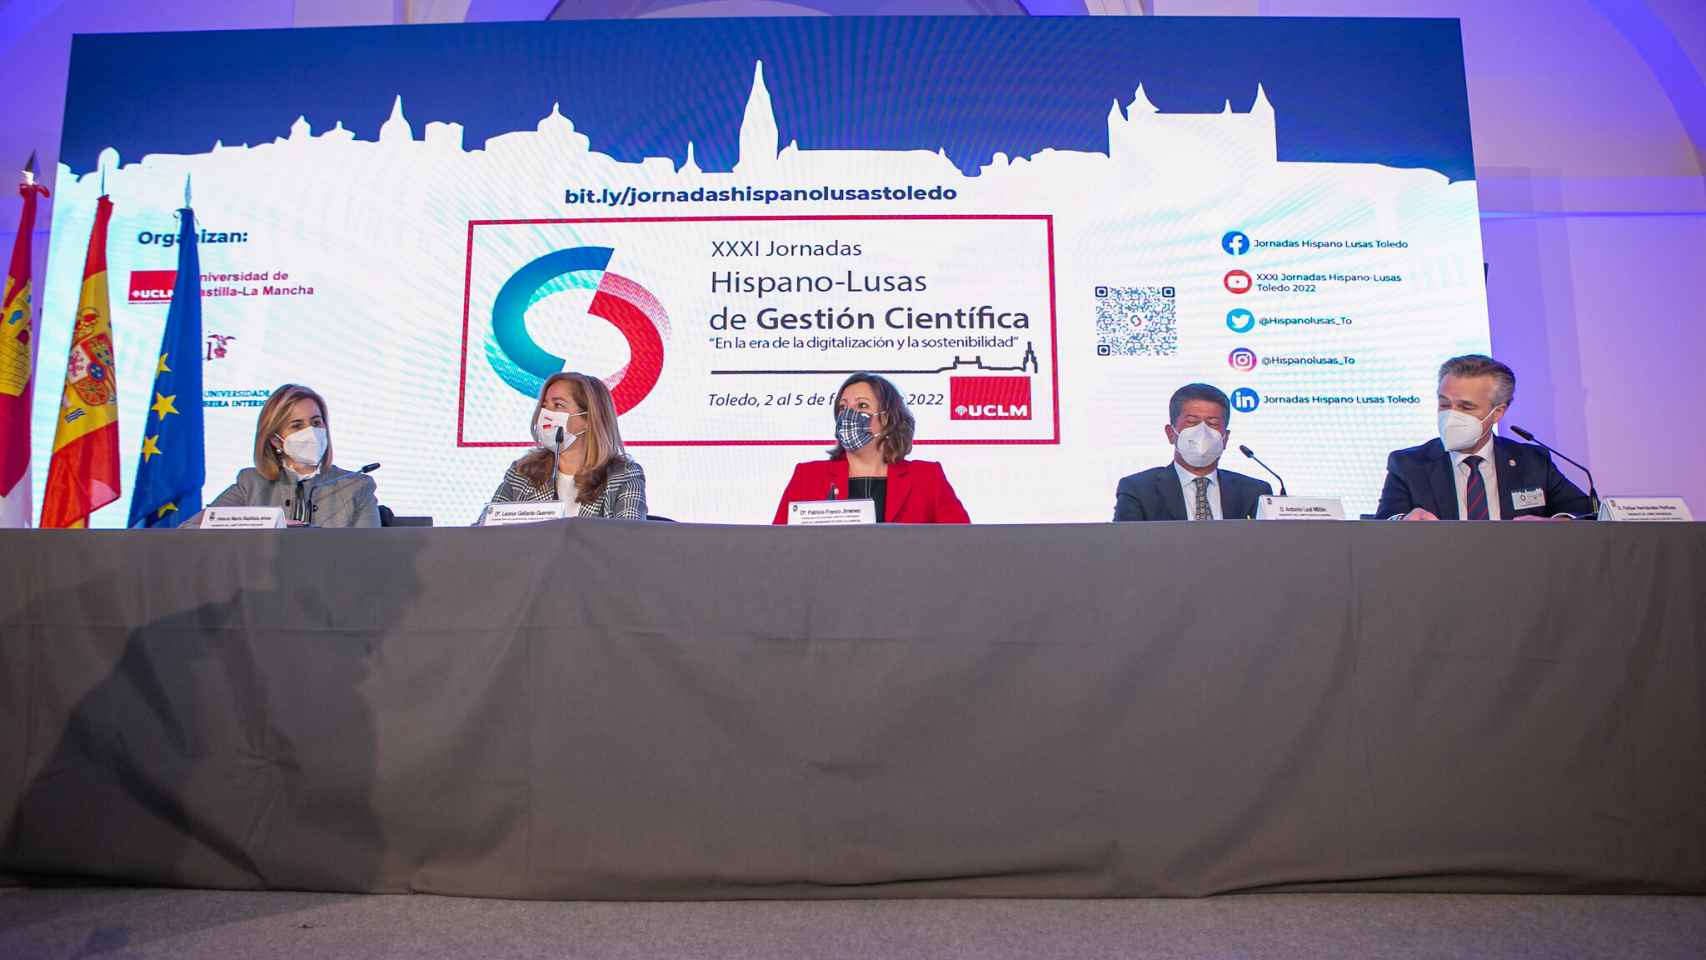 Inauguración de las XXXI Jornadas Hispano-Lusas de Gestión Científica. Foto: Esteban González / JCCM